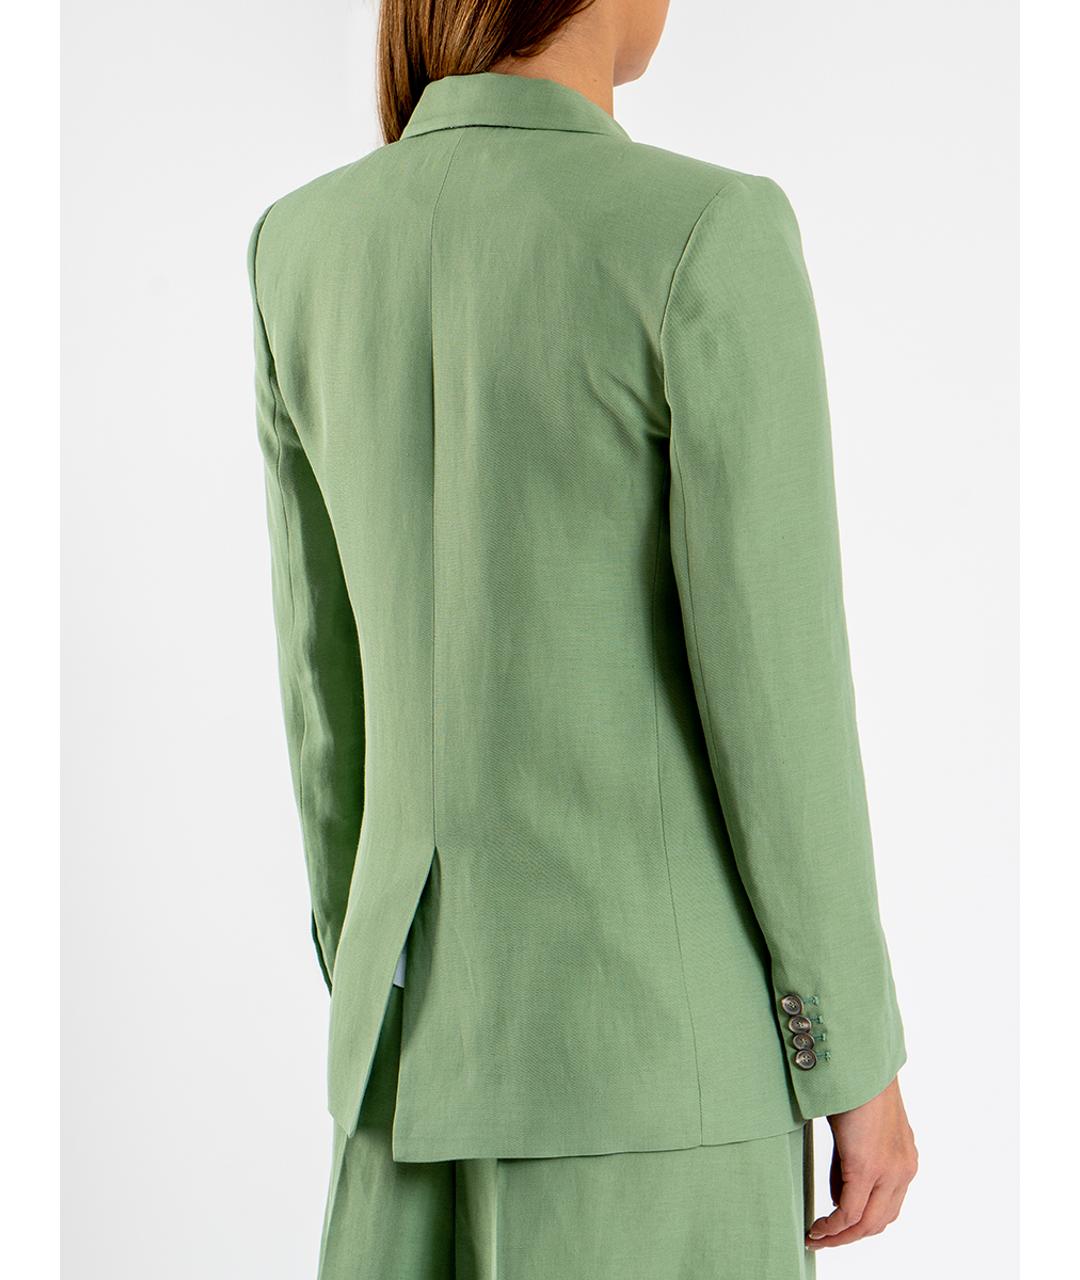 FABIANA FILIPPI Зеленый вискозный жакет/пиджак, фото 2